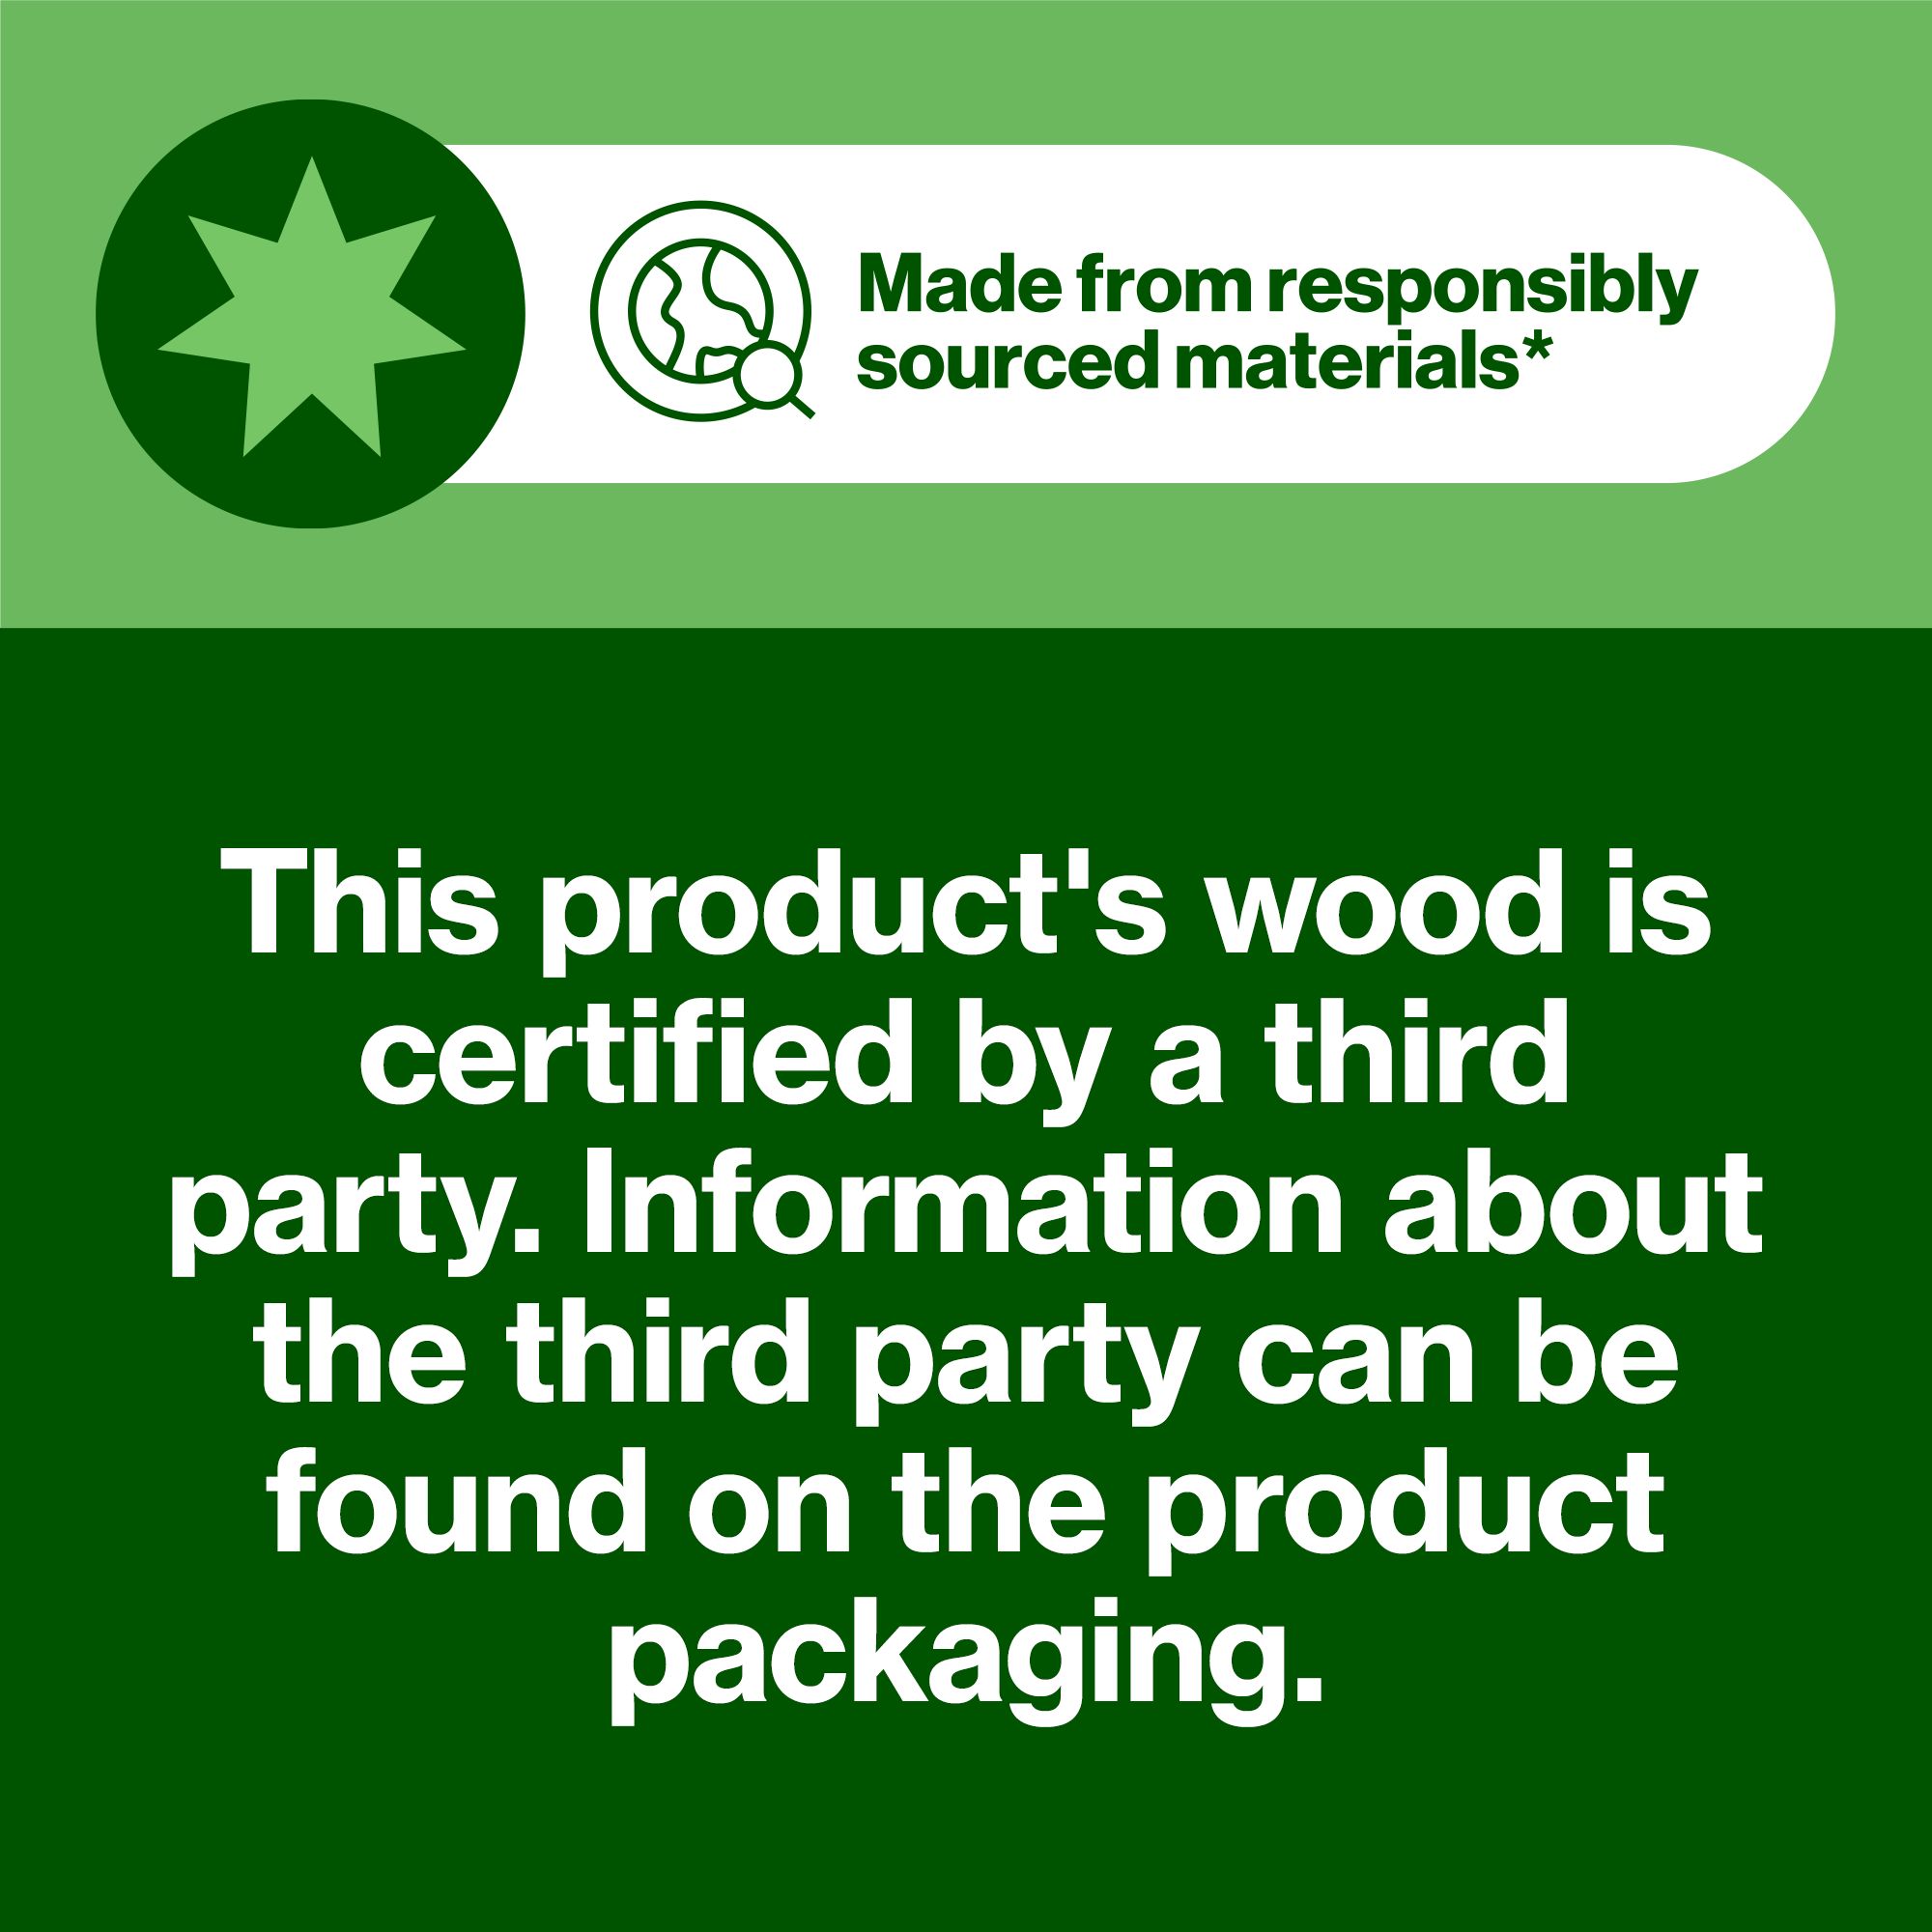 Hardwood Plywood (L)1.22m (W)0.61m (T)12mm